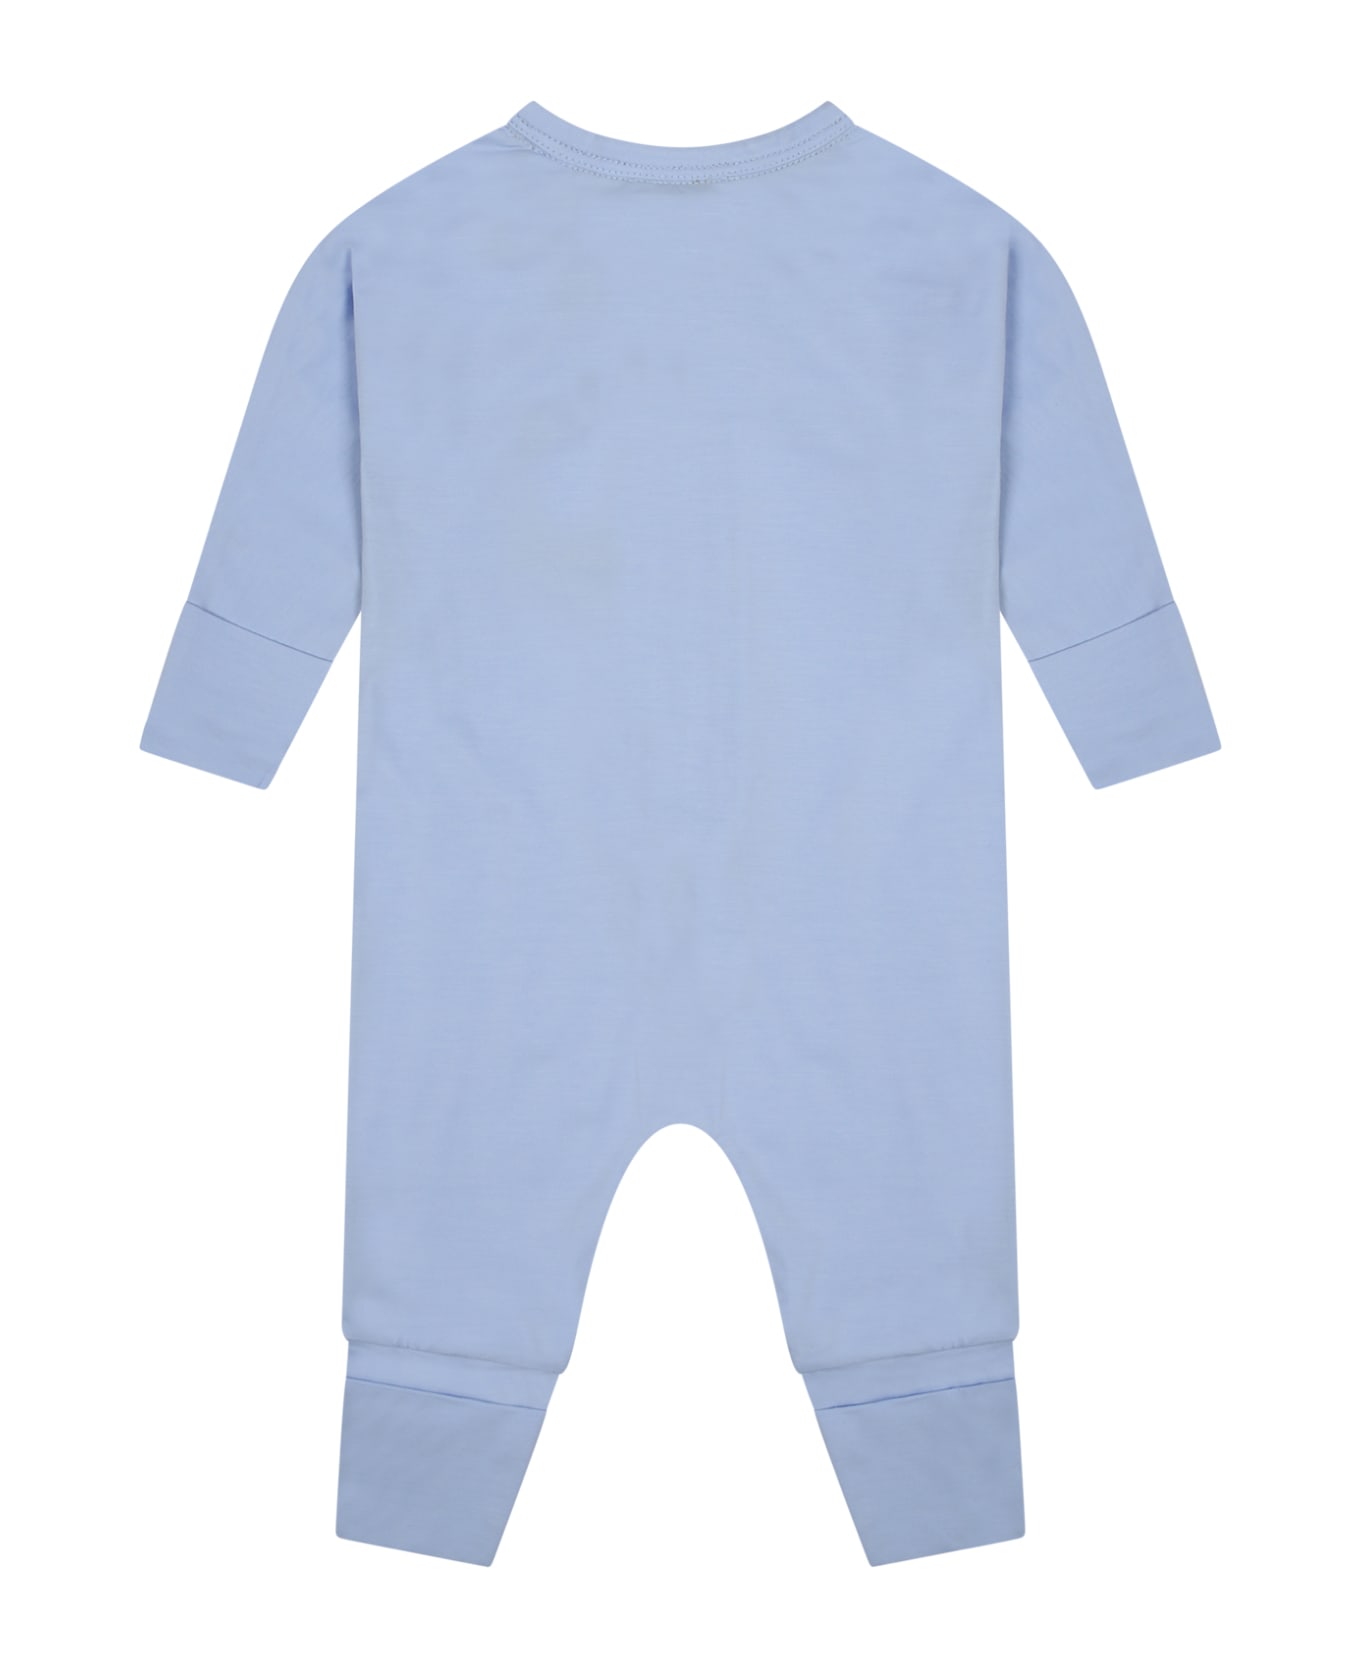 Burberry Light Blue Set For Baby Boy With Logo - Light Blue